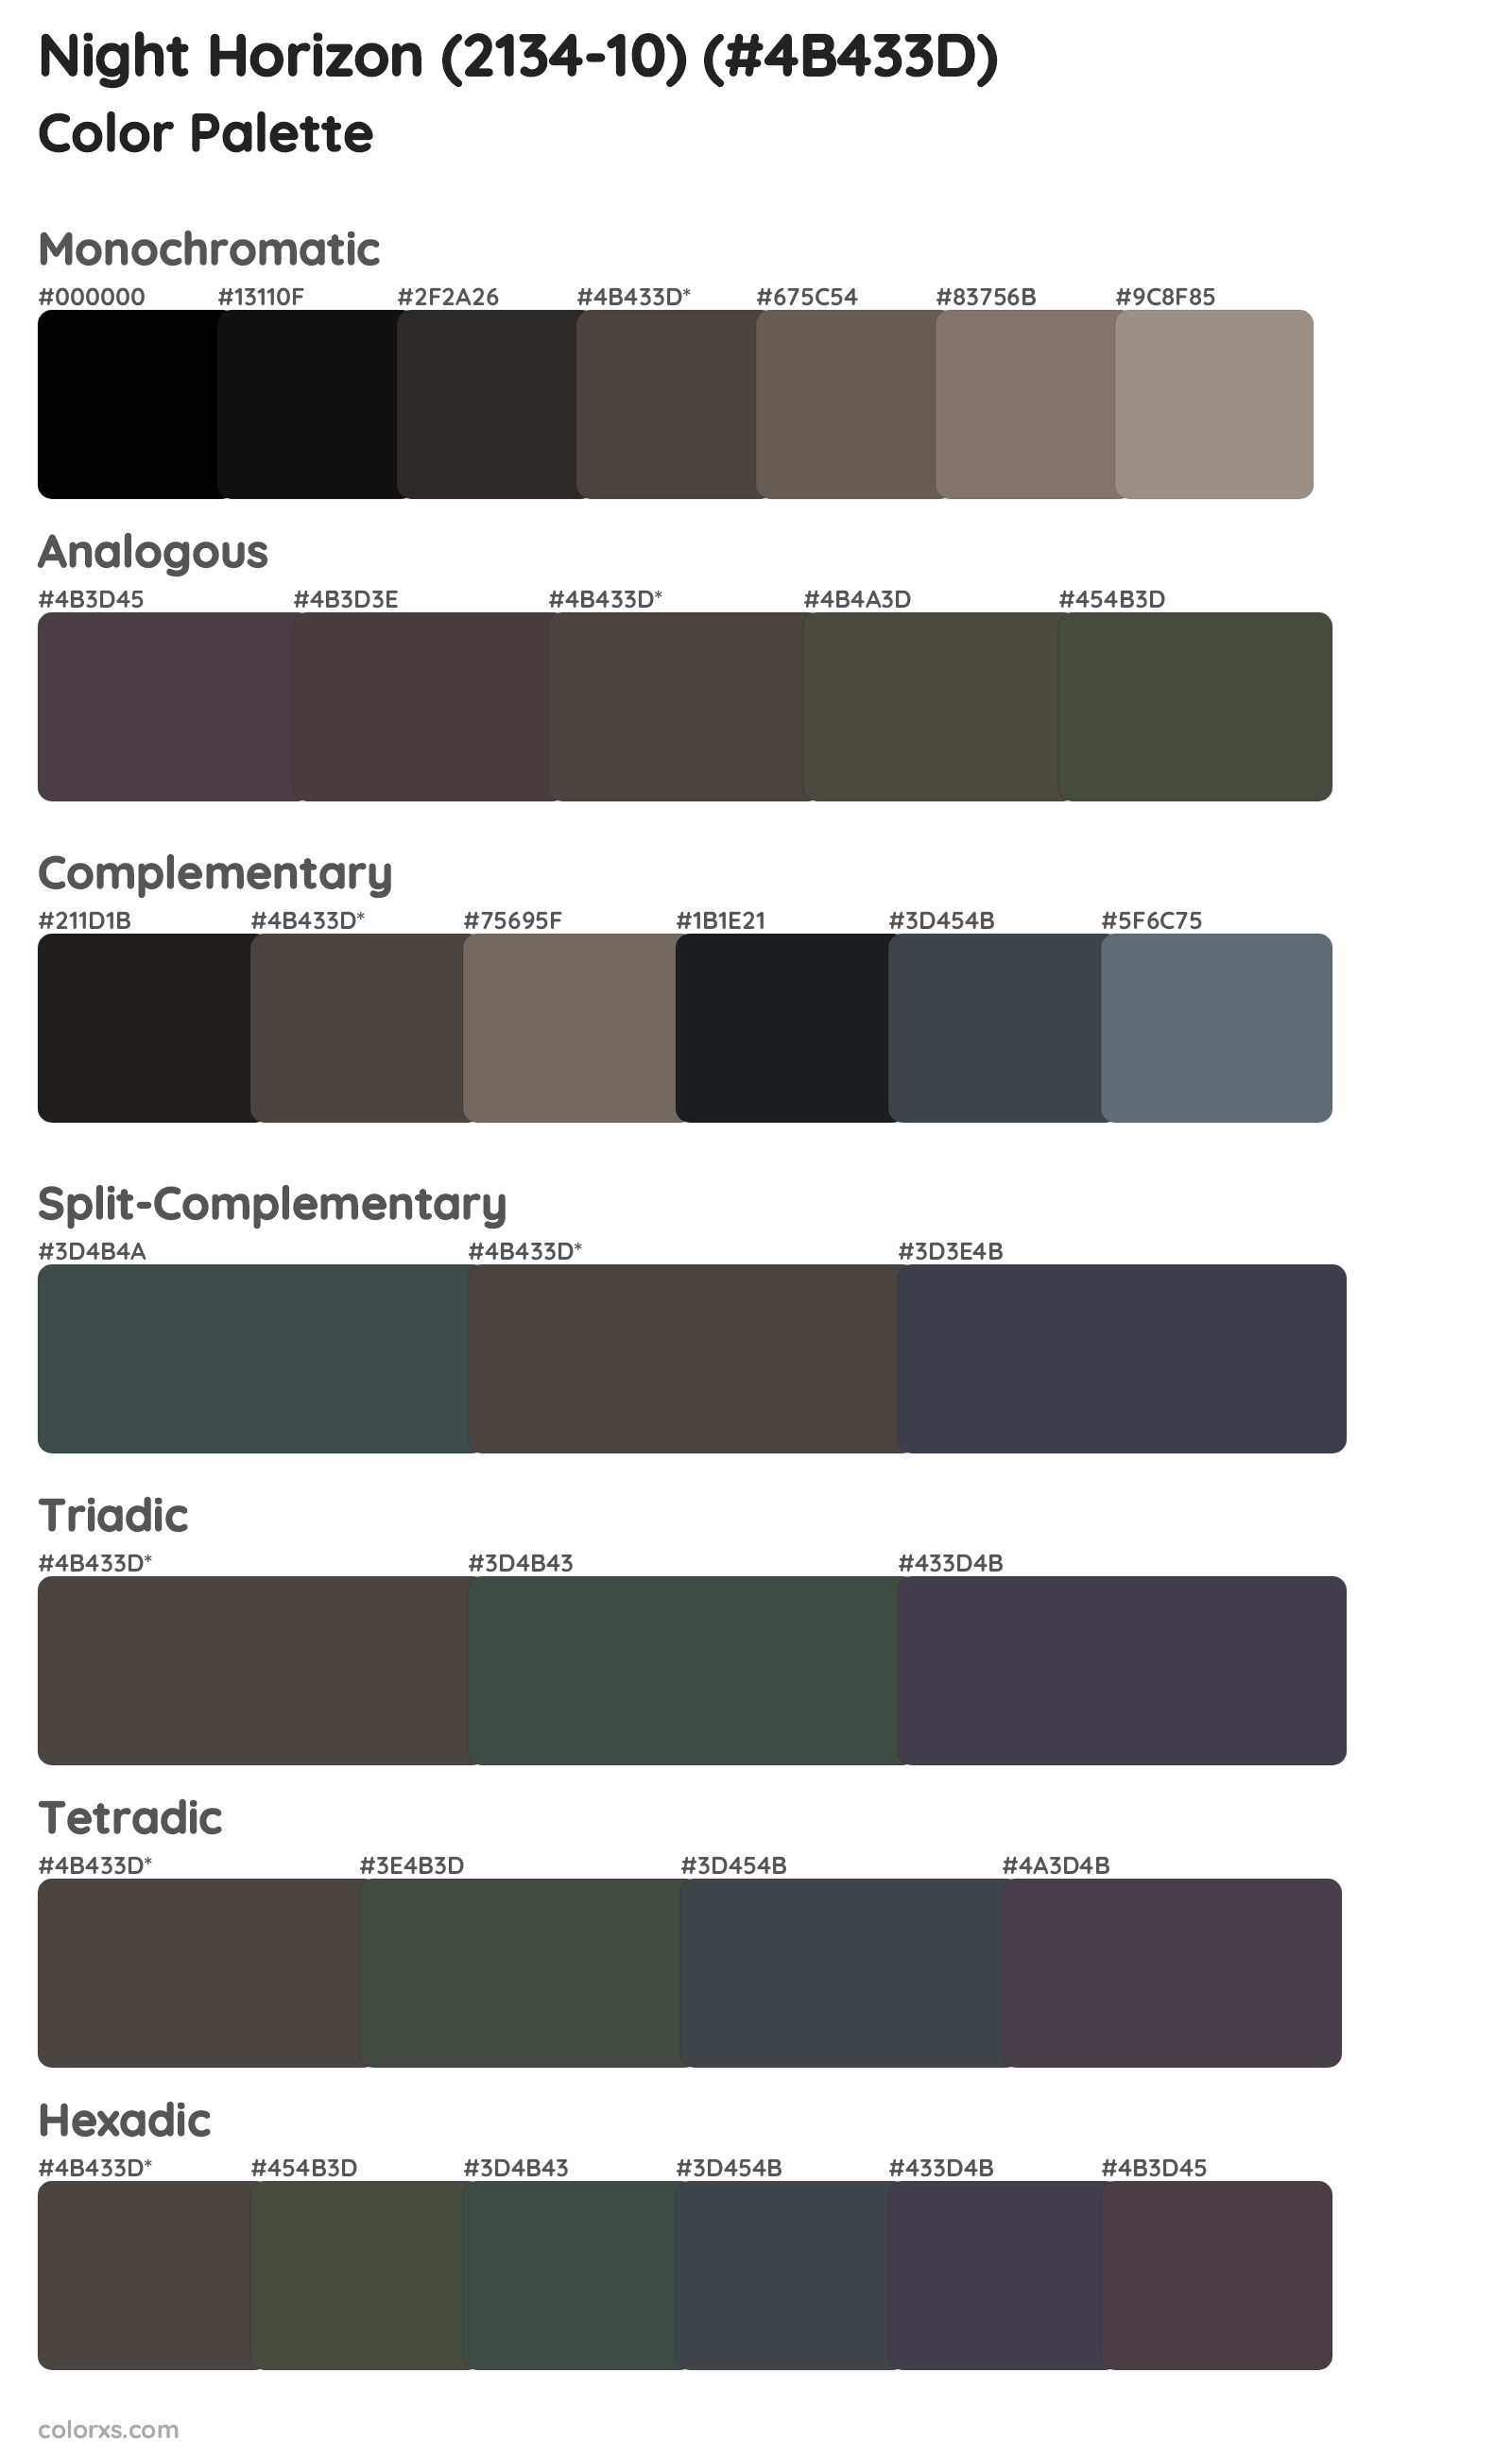 Night Horizon (2134-10) Color Scheme Palettes